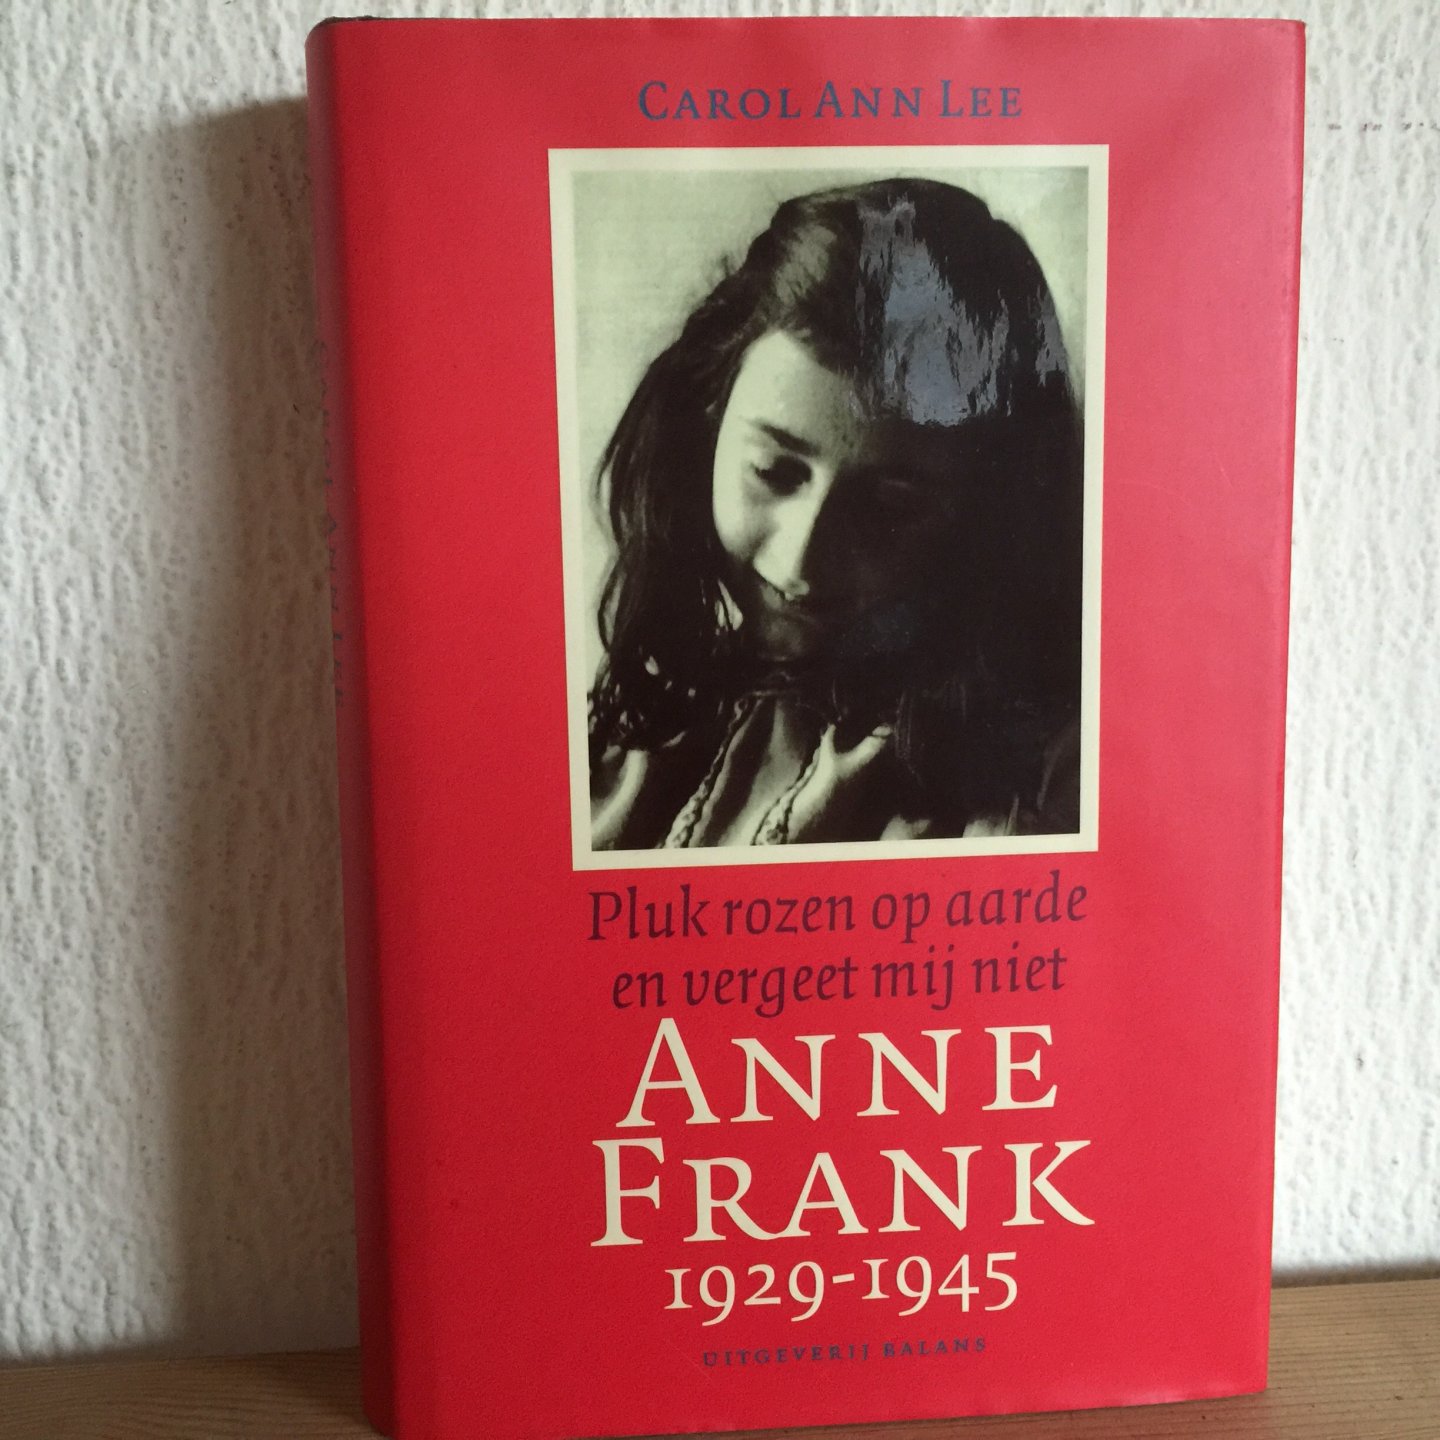 Lee, C.A. - Anne Frank 1929-1945 / pluk rozen op aarde en vergeet mij niet